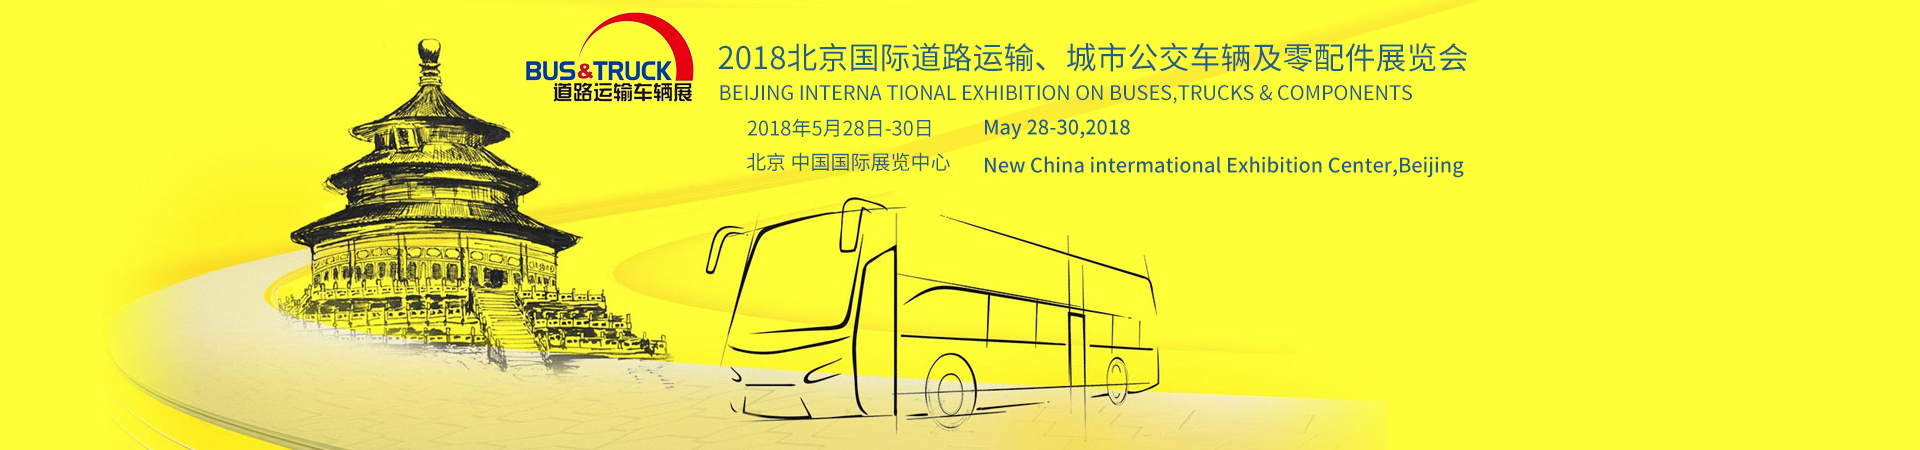 康明斯展台 2018北京国际道路运输展